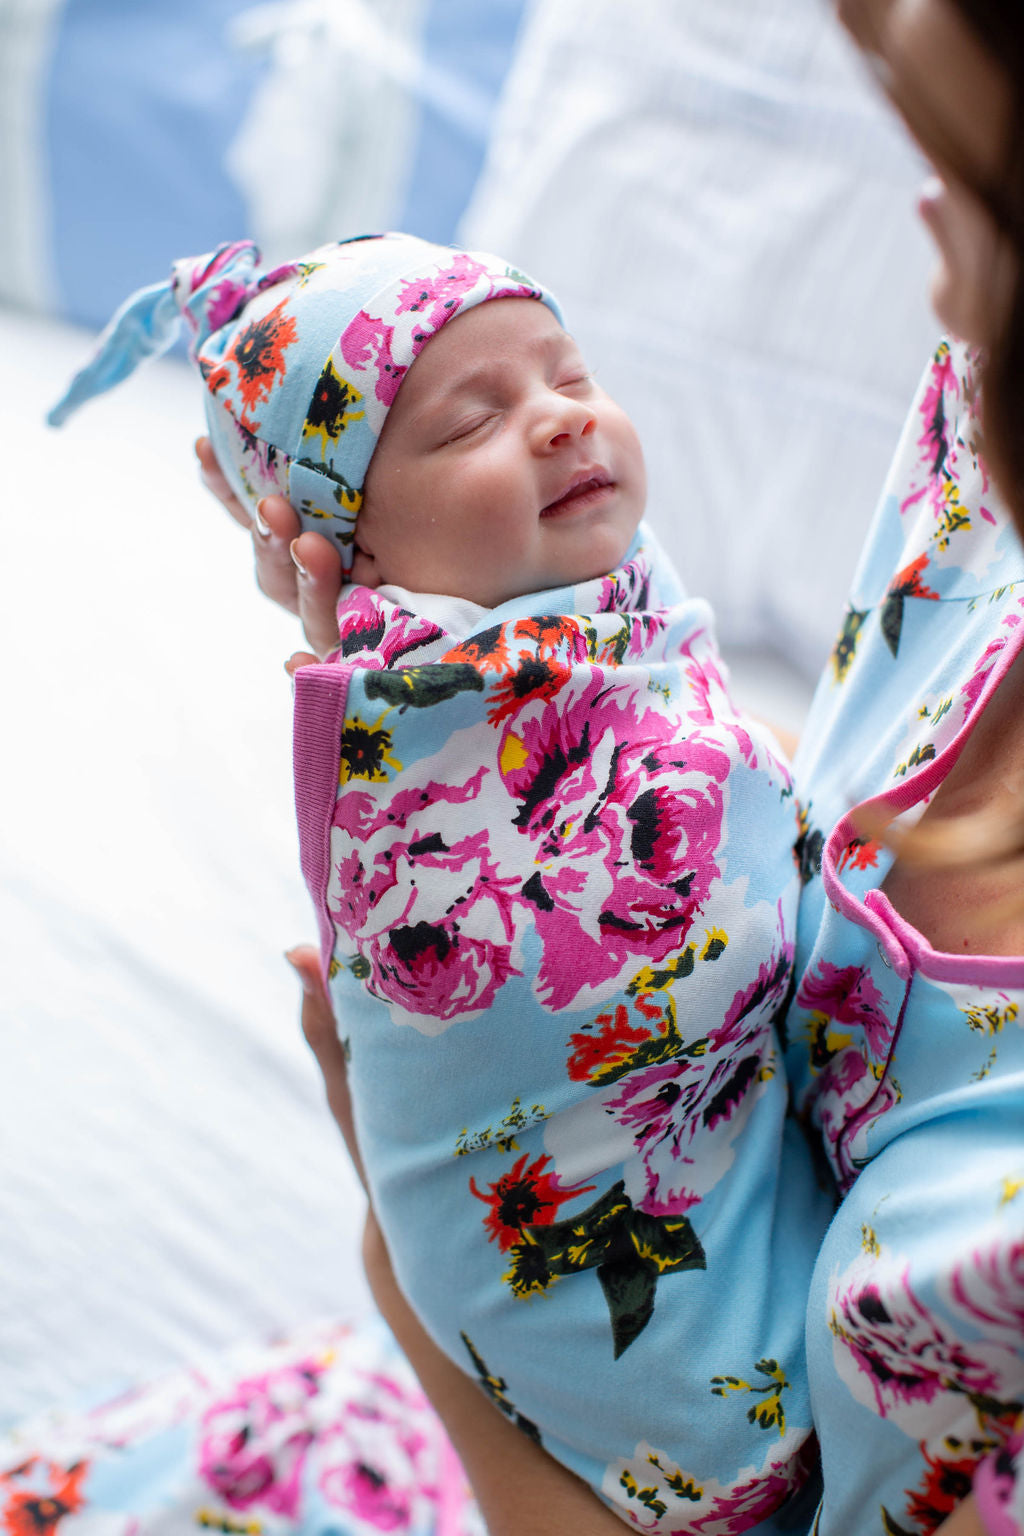 Isla Maternity Nursing Pajamas & Swaddle Blanket Set